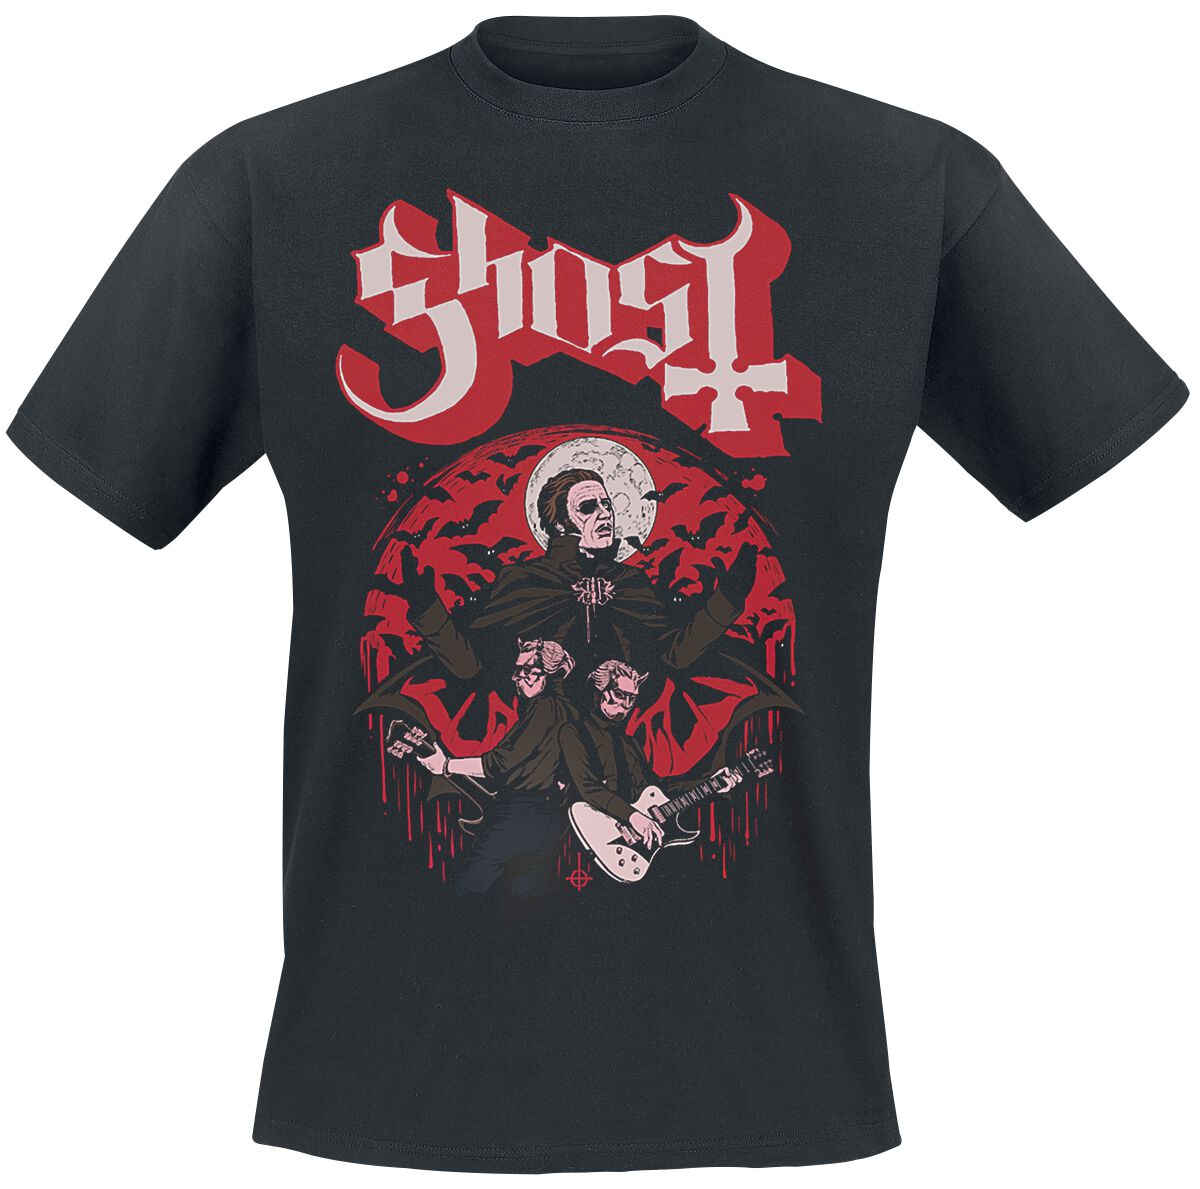 Ghost T-Shirt - Guitars - S bis 5XL - für Männer - Größe M - schwarz  - Lizenziertes Merchandise!